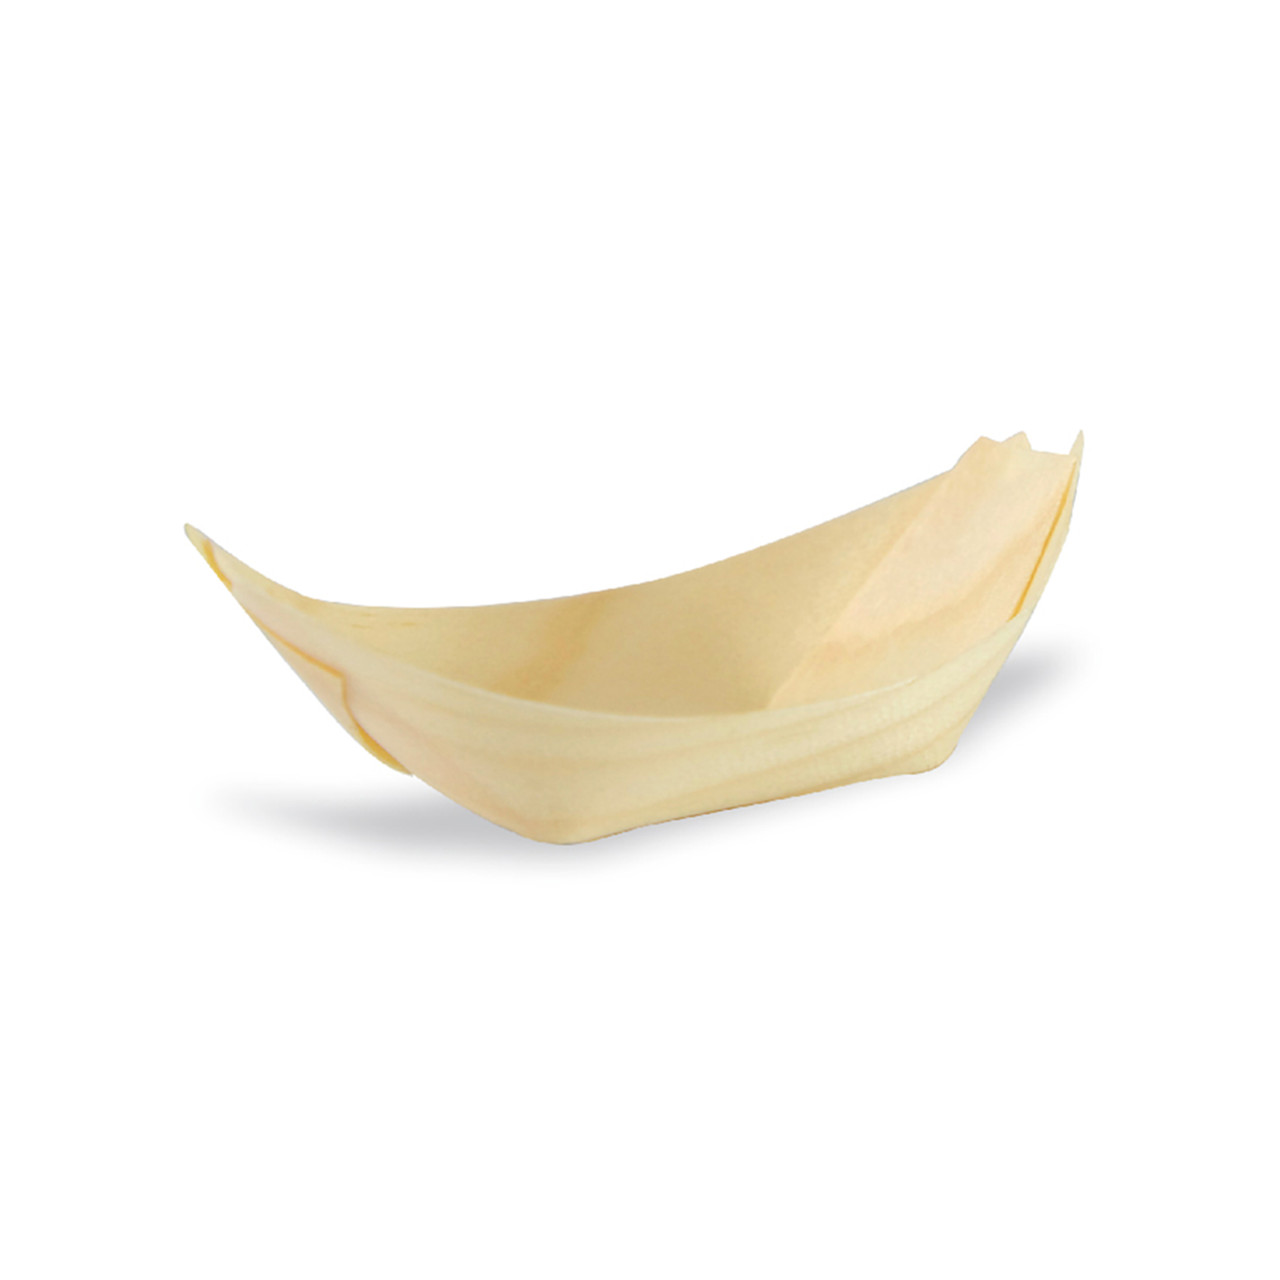 Mini Wooden Boats - L:2.69 x W:1.68 H:.75in